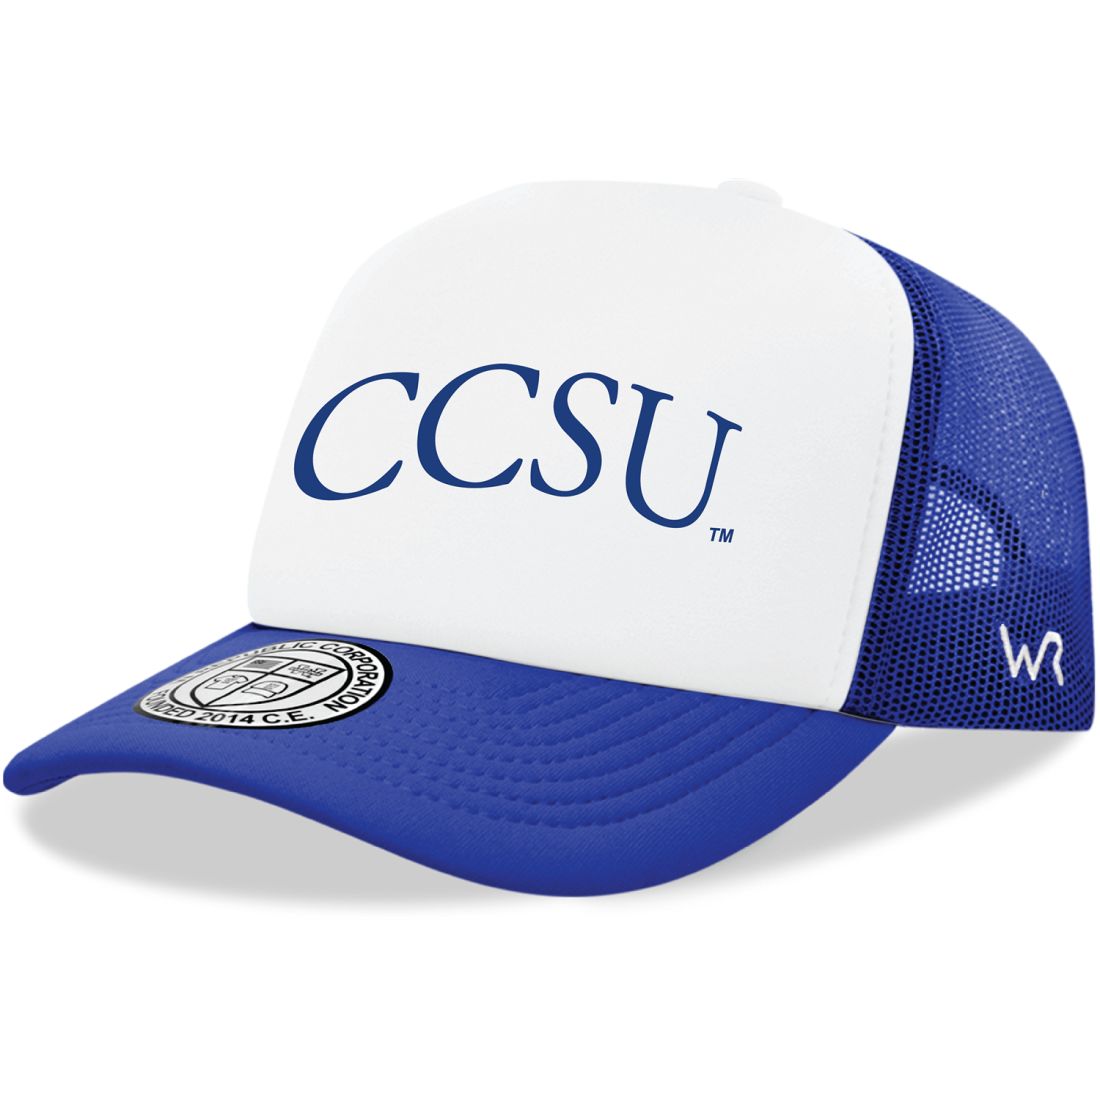 CCSU Central Connecticut State University Blue Devils Practice Foam Trucker Hats